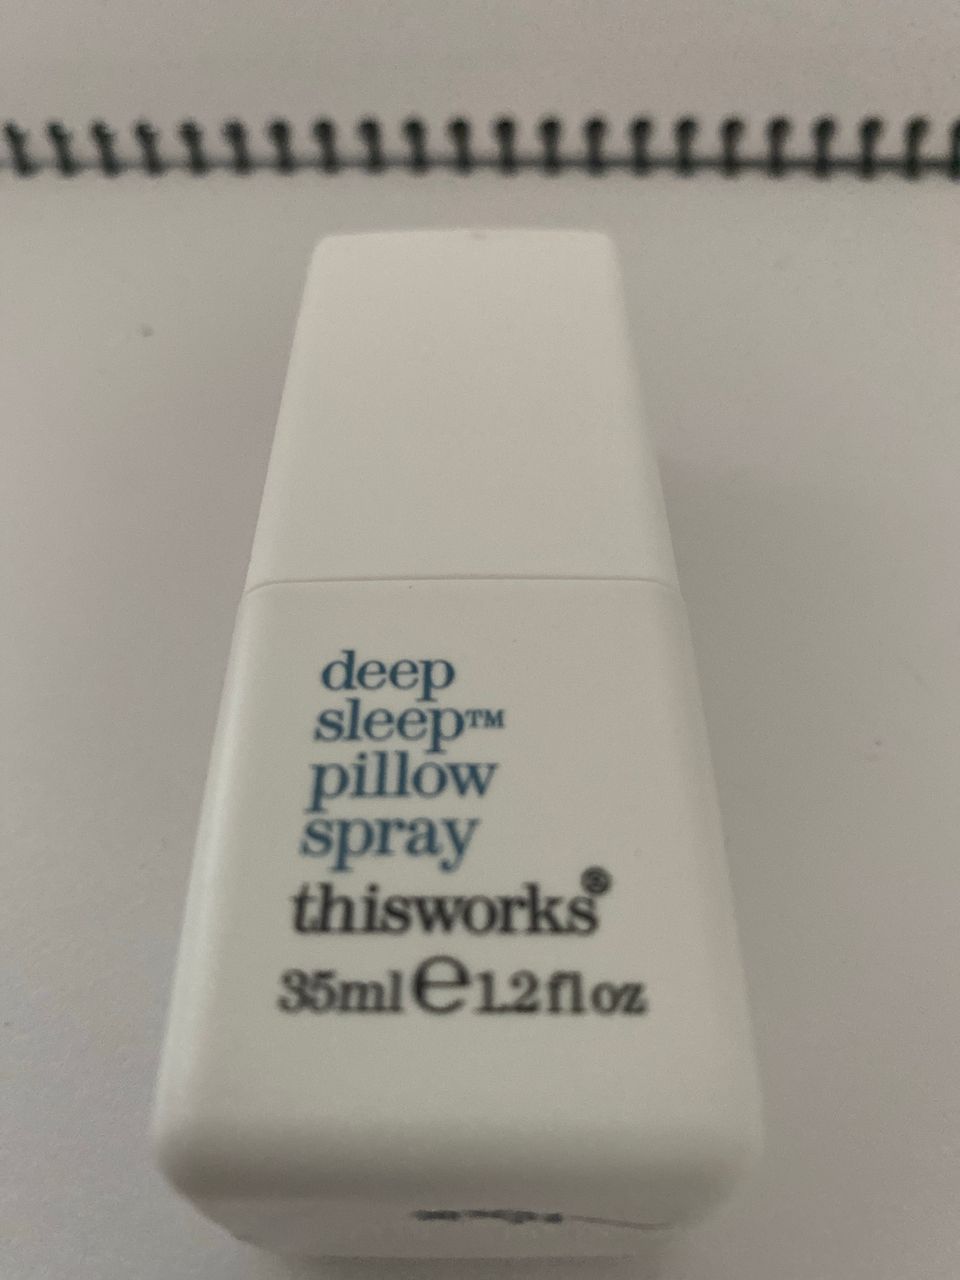 Deep sleep pillow spray